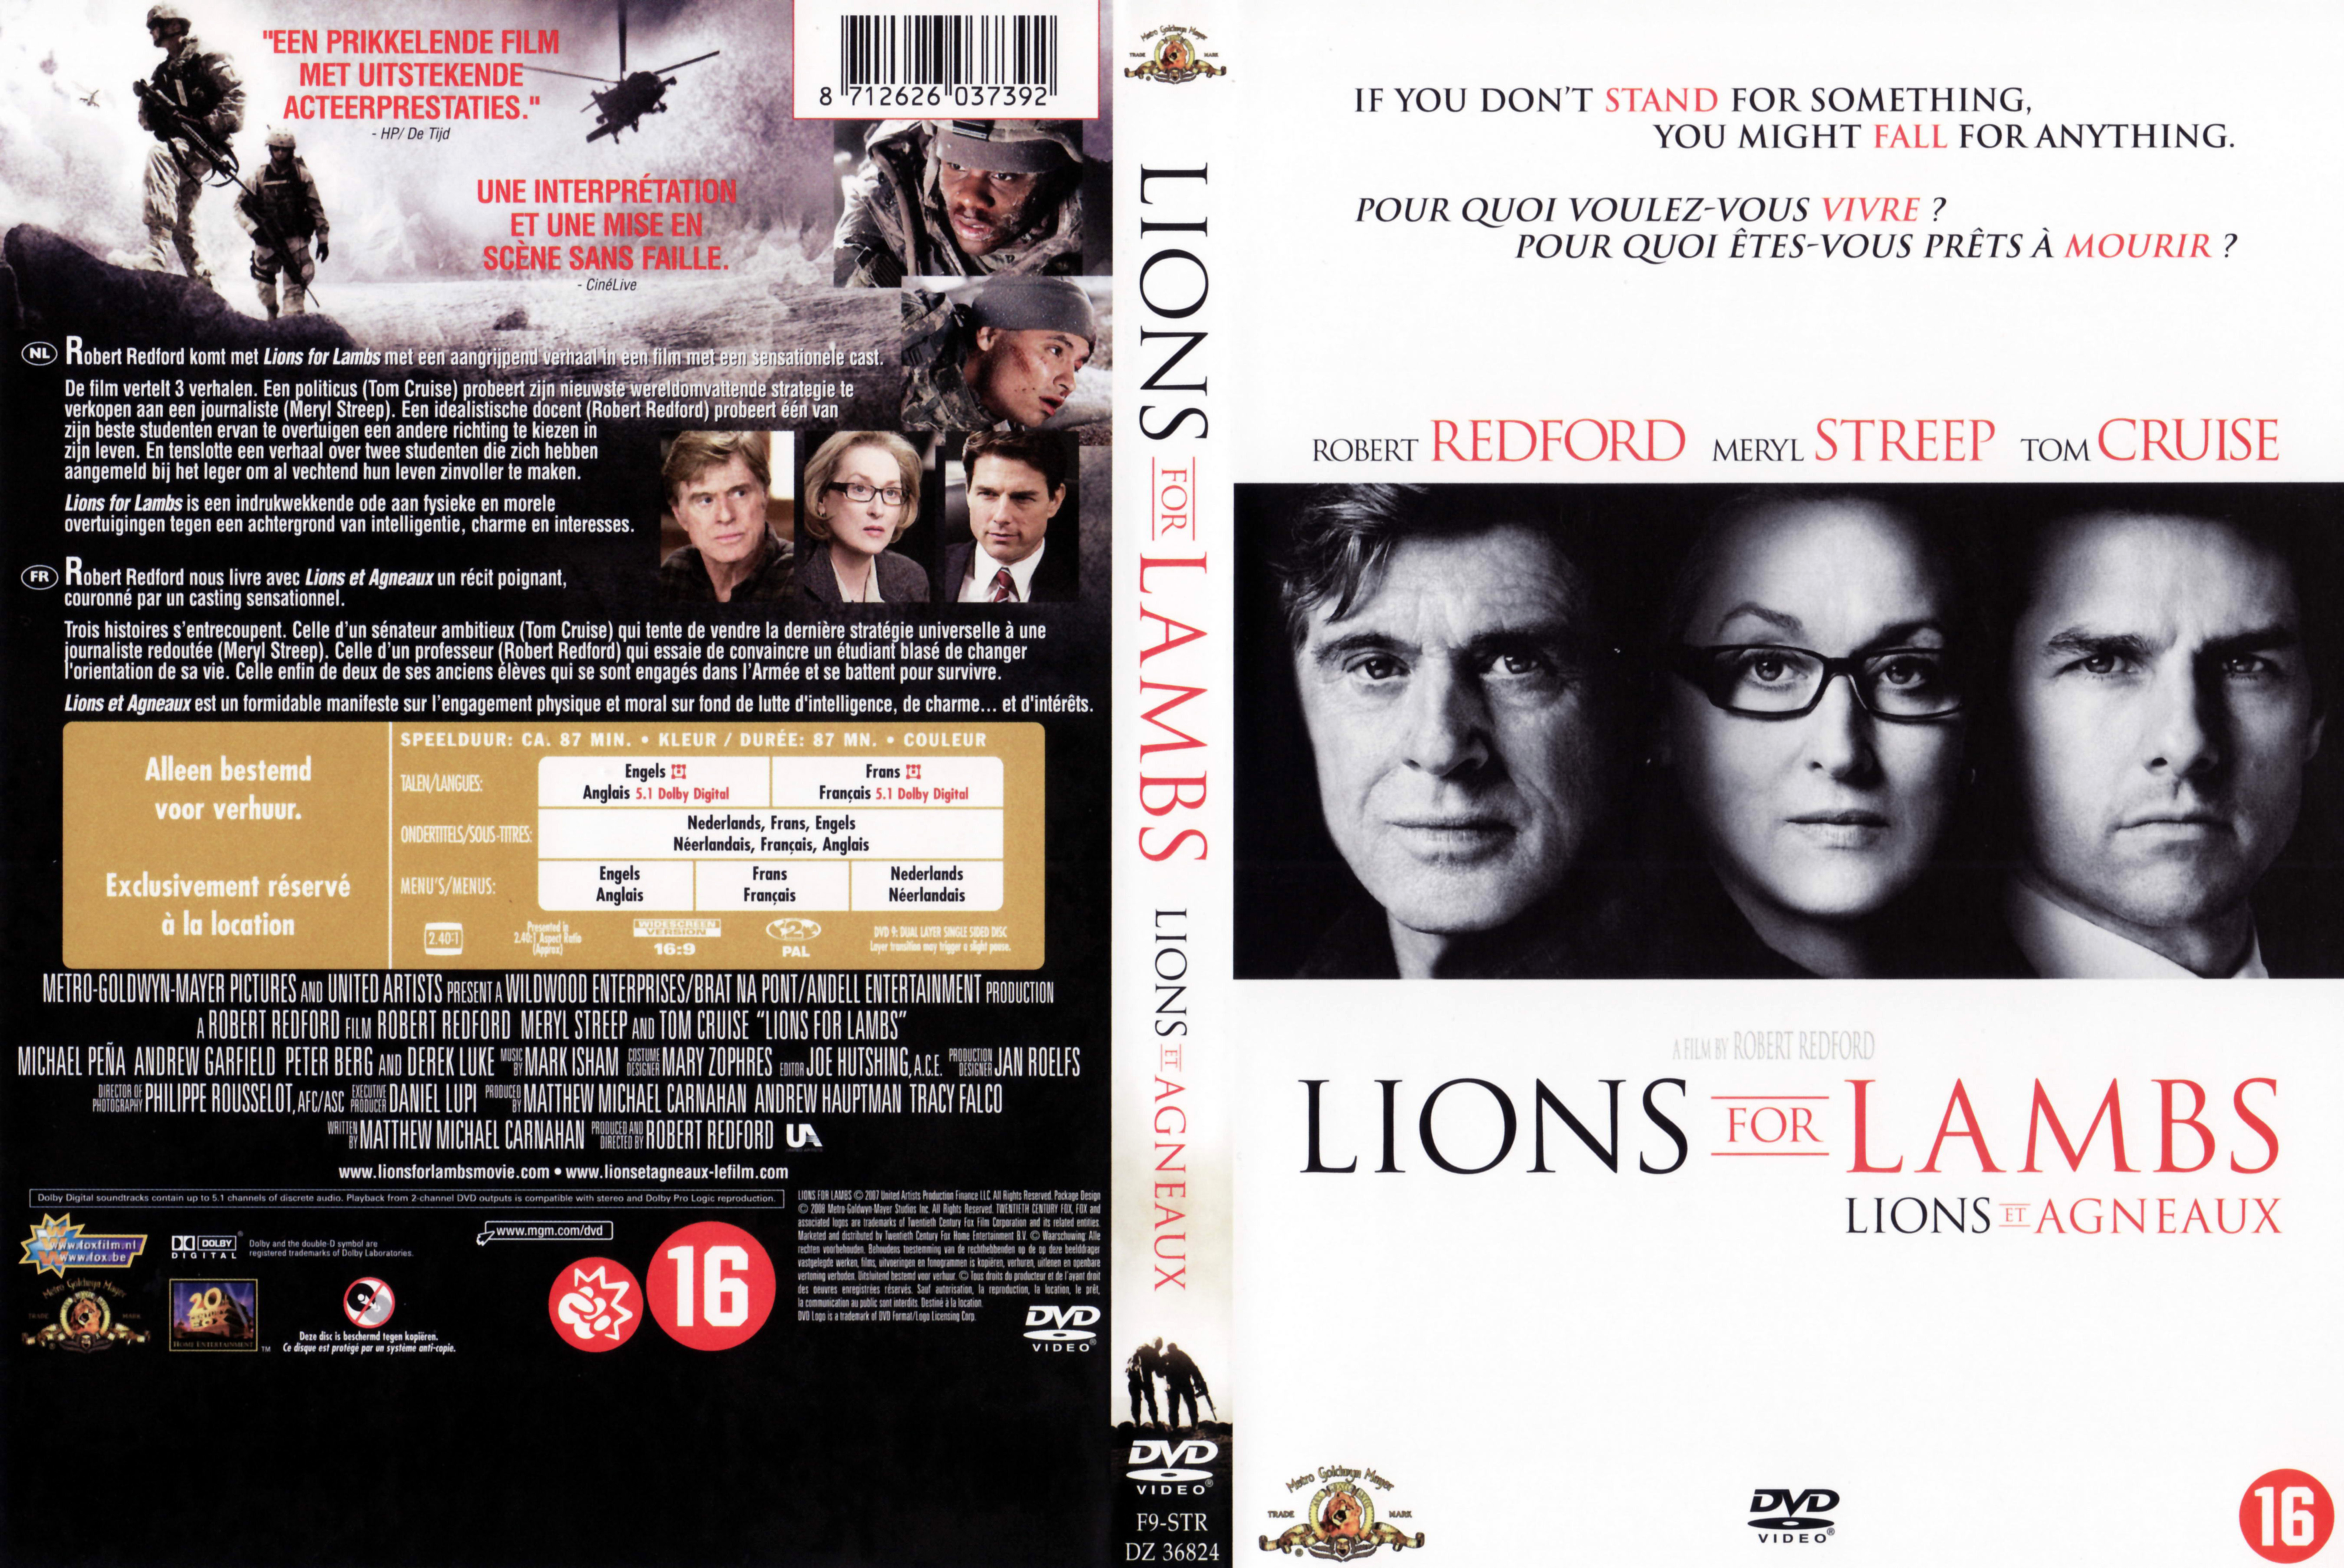 Jaquette DVD Lions et agneaux v3